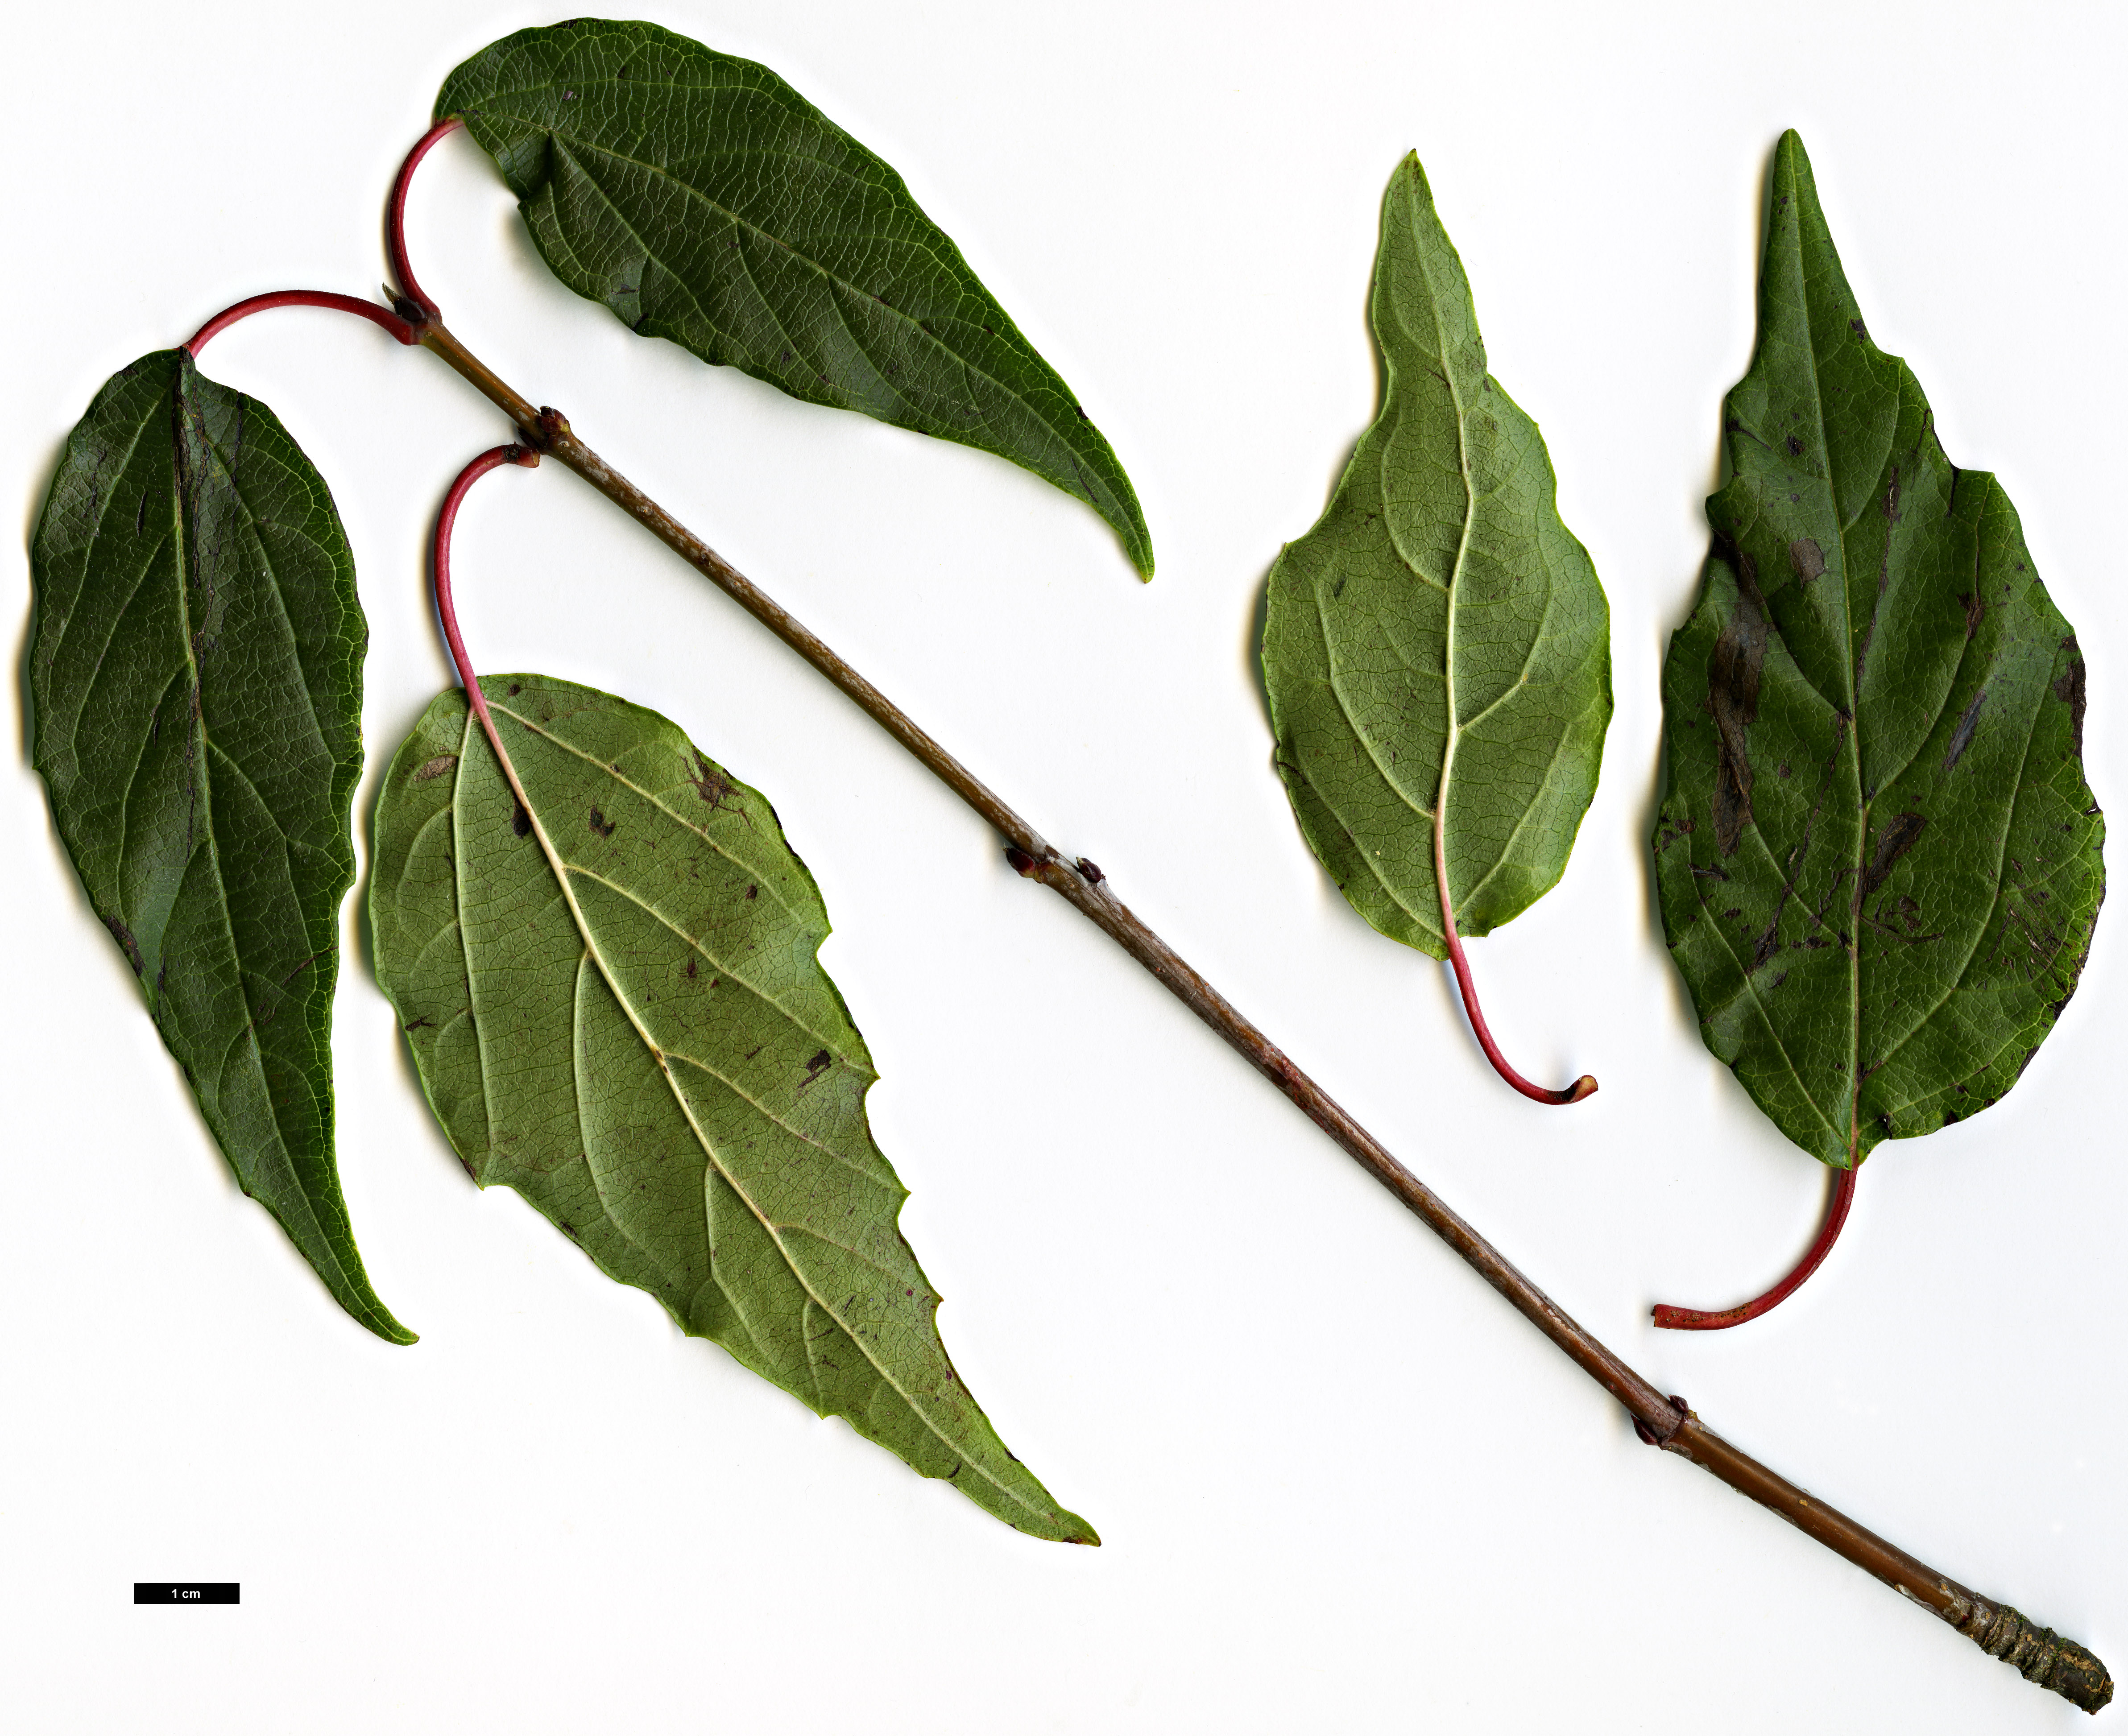 High resolution image: Family: Adoxaceae - Genus: Viburnum - Taxon: dasyanthum